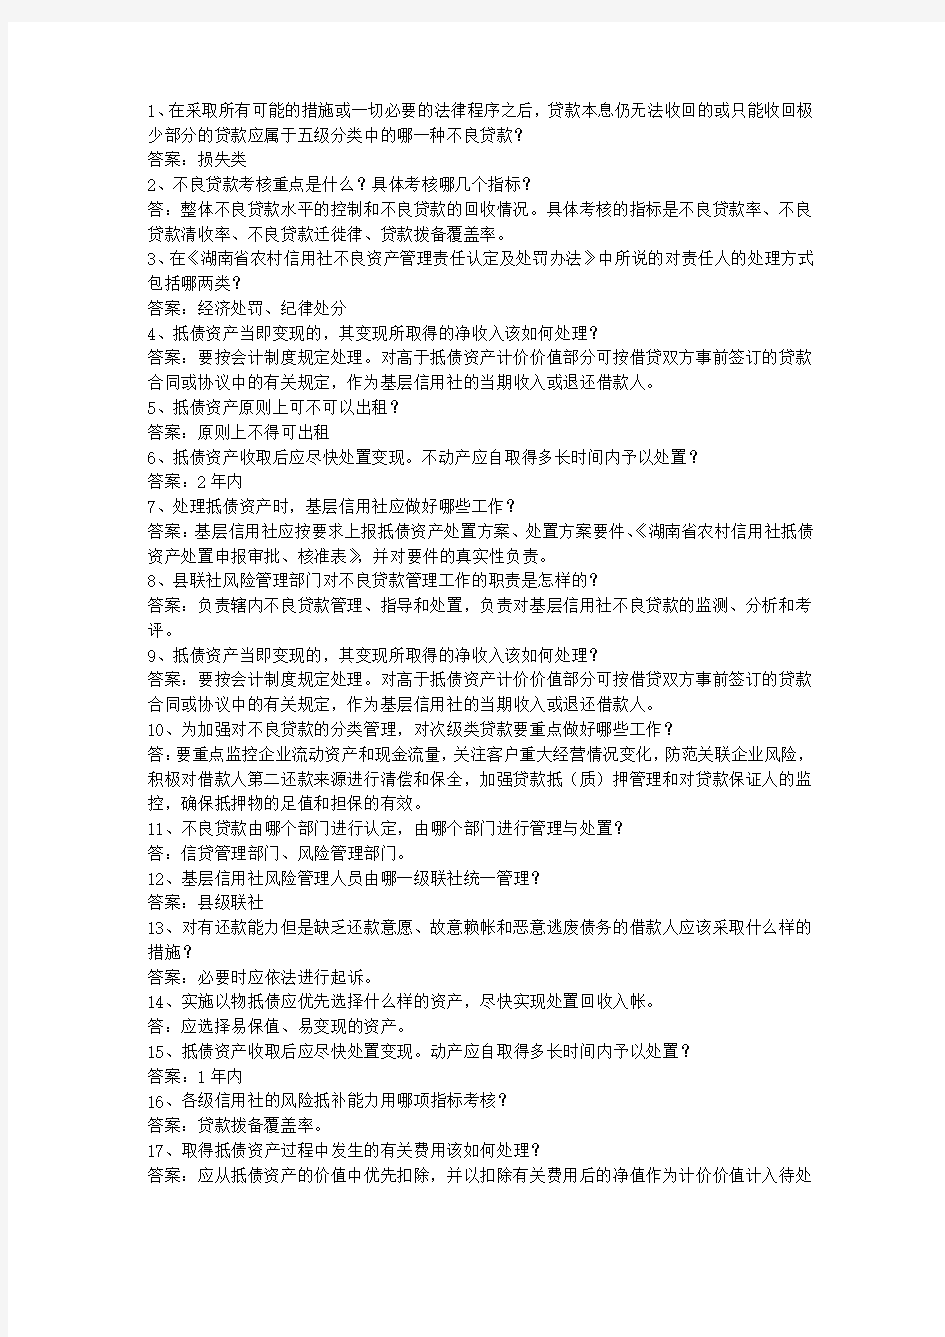 2013台湾省村信用社校园招聘考试答题技巧